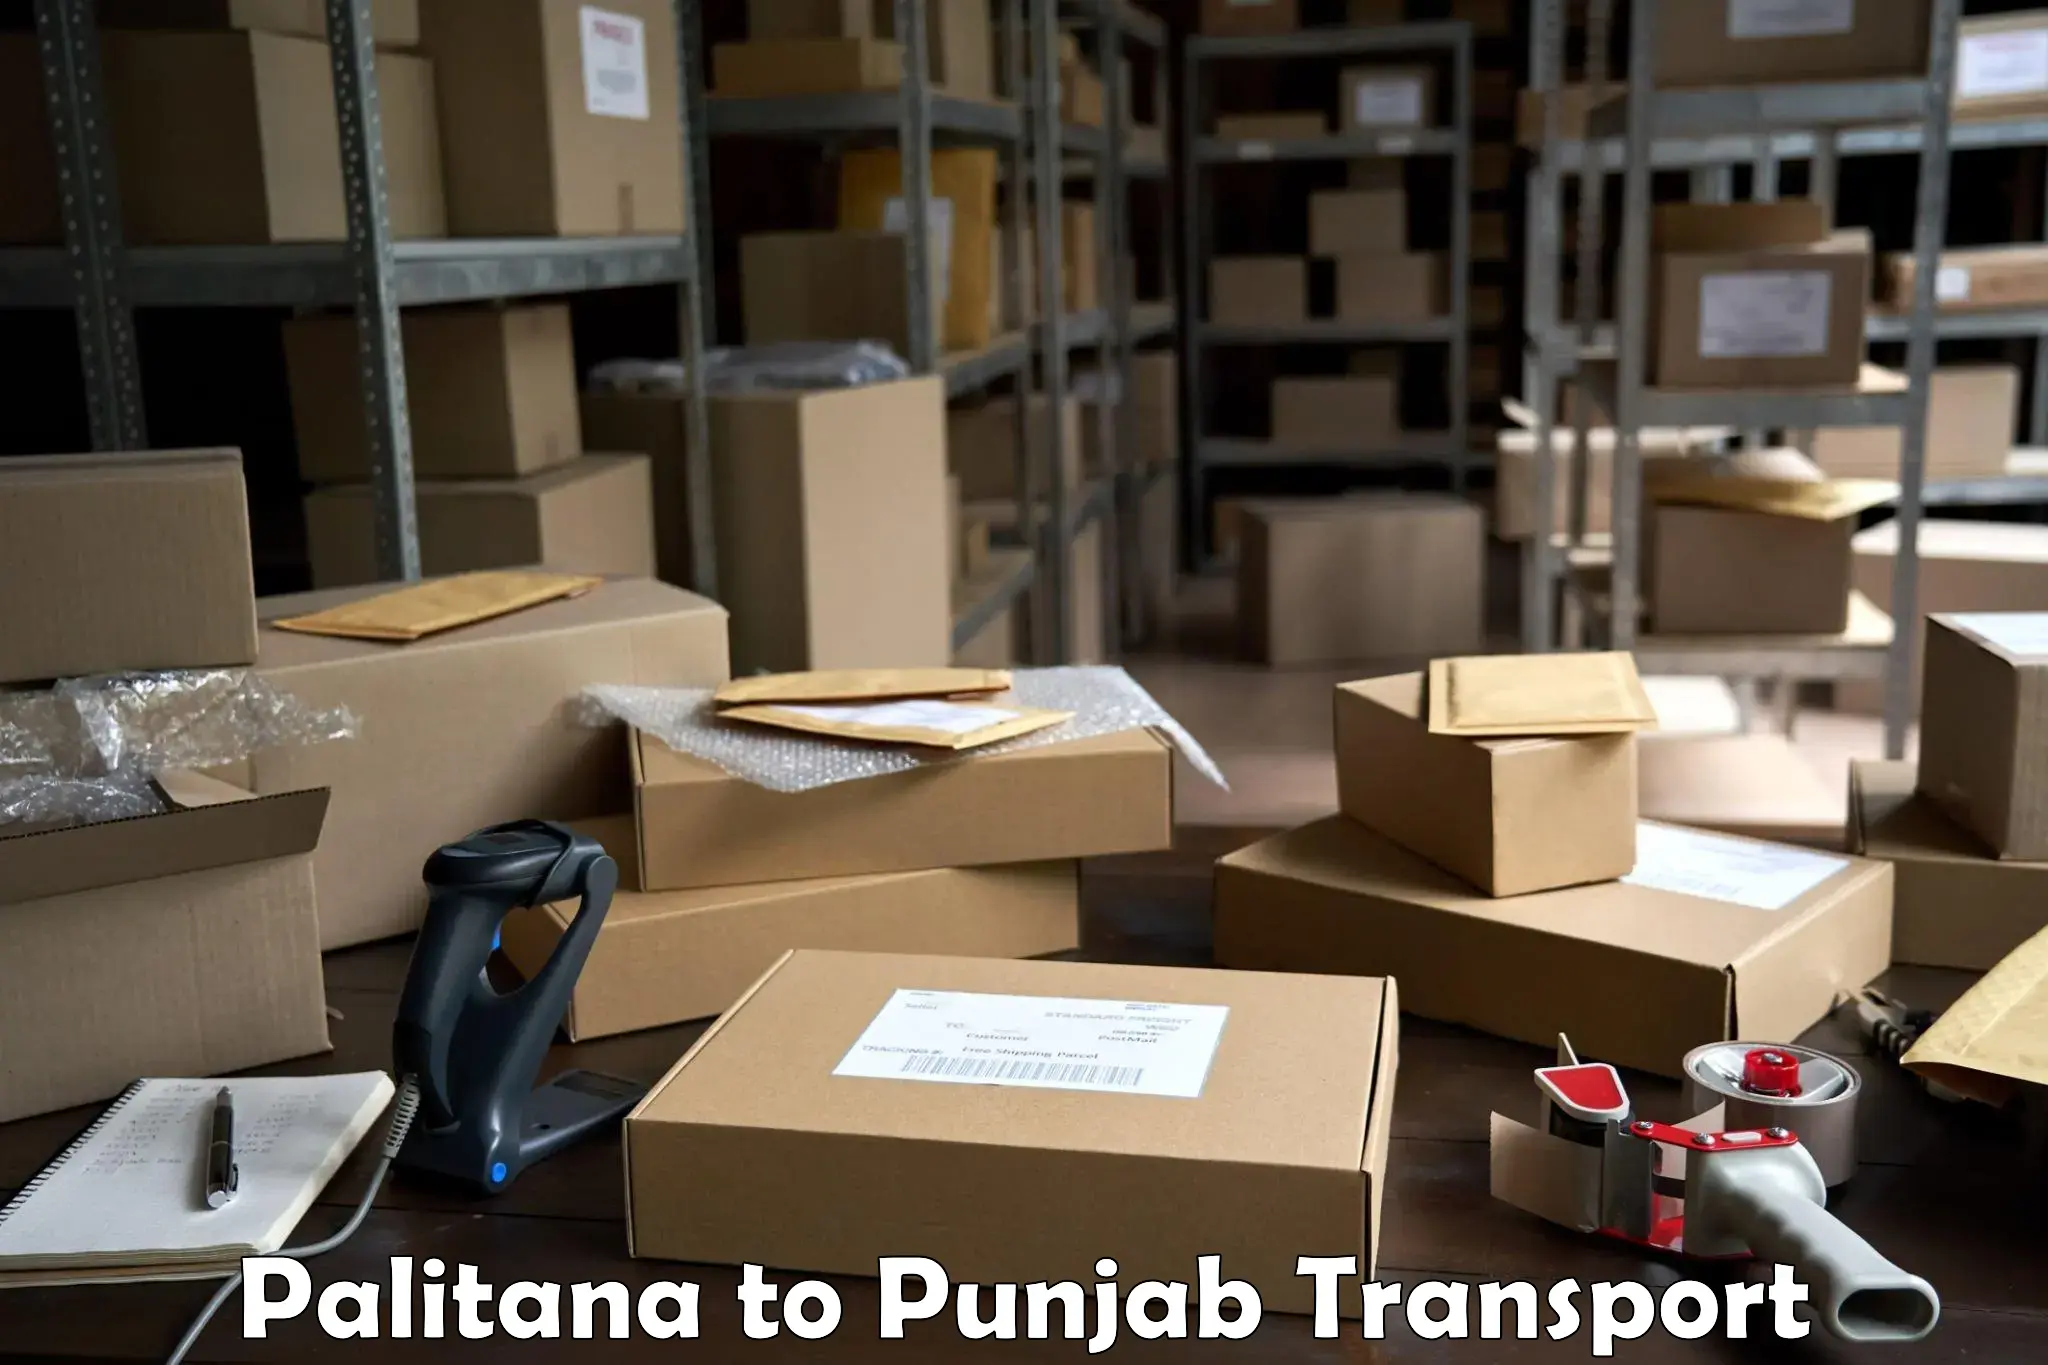 Land transport services in Palitana to Punjab